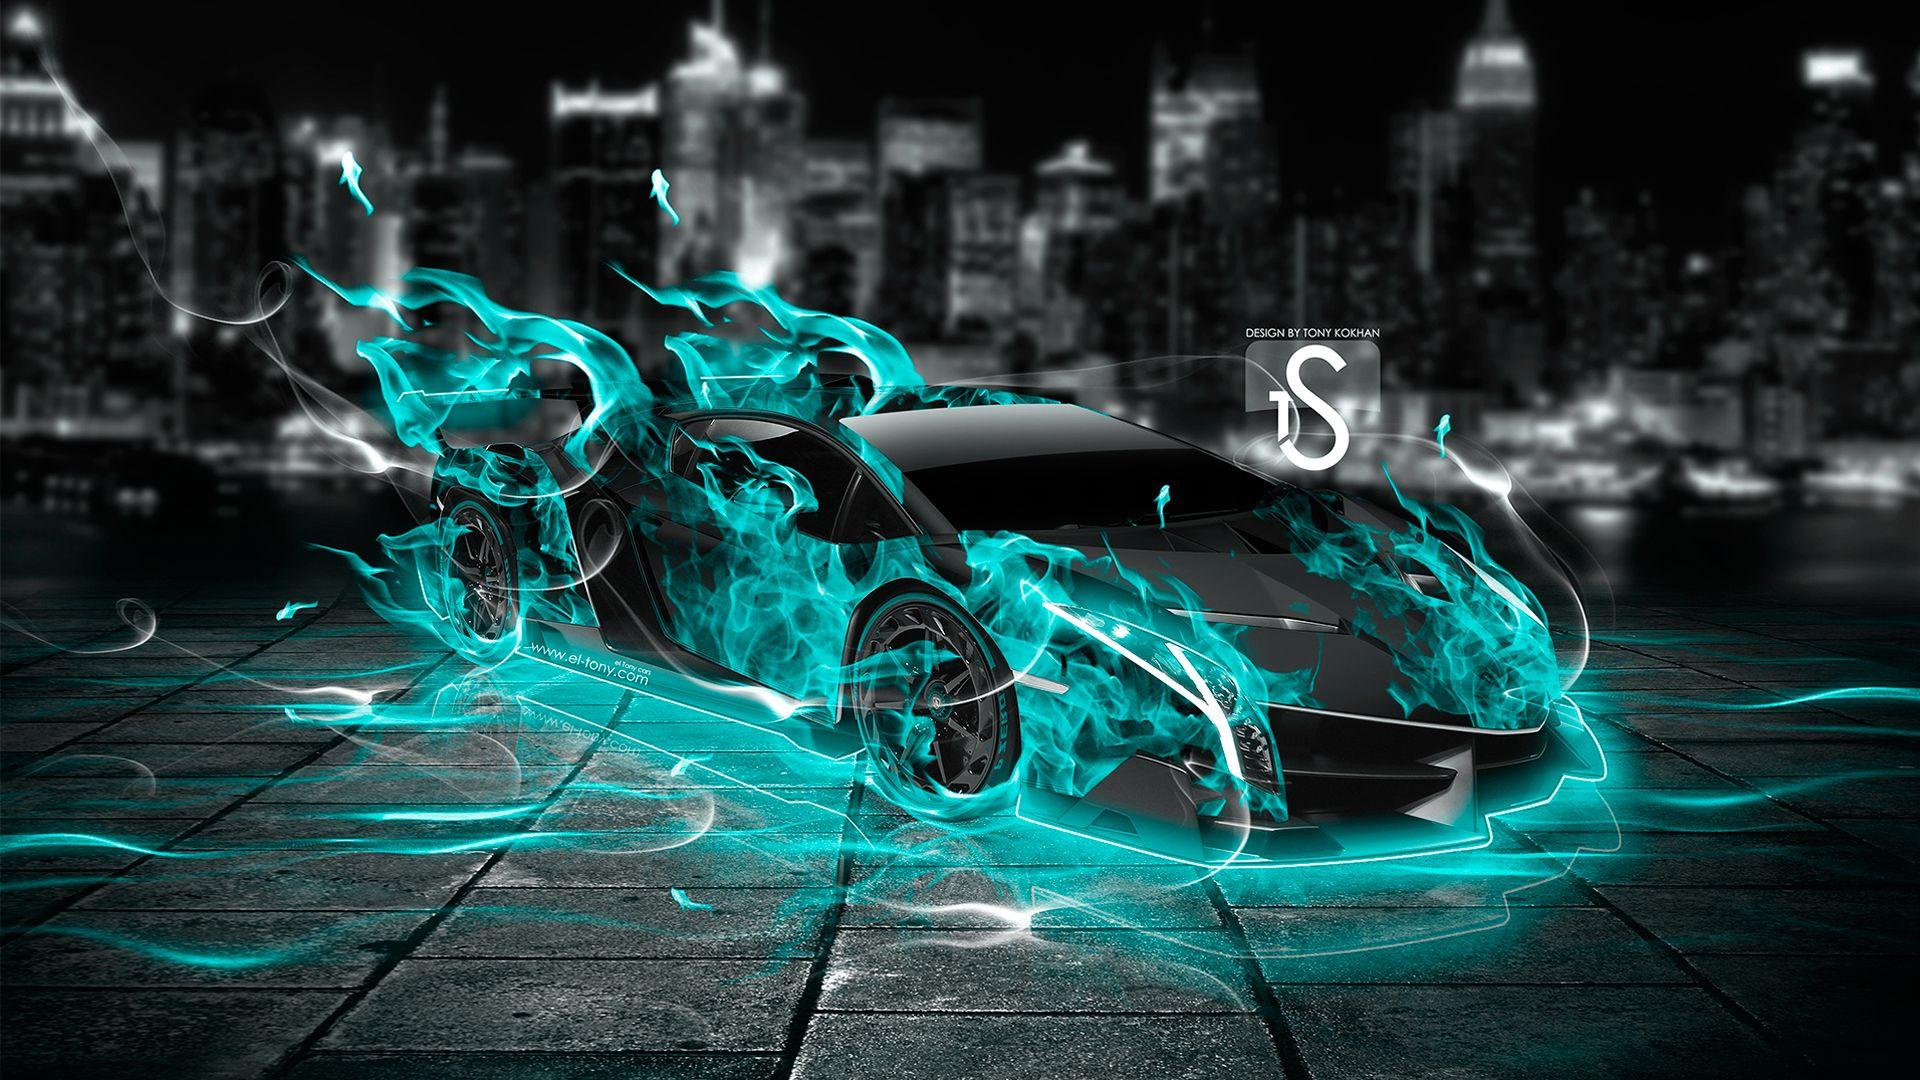 Lamborghini On Fire Wallpapers - Top Free Lamborghini On Fire